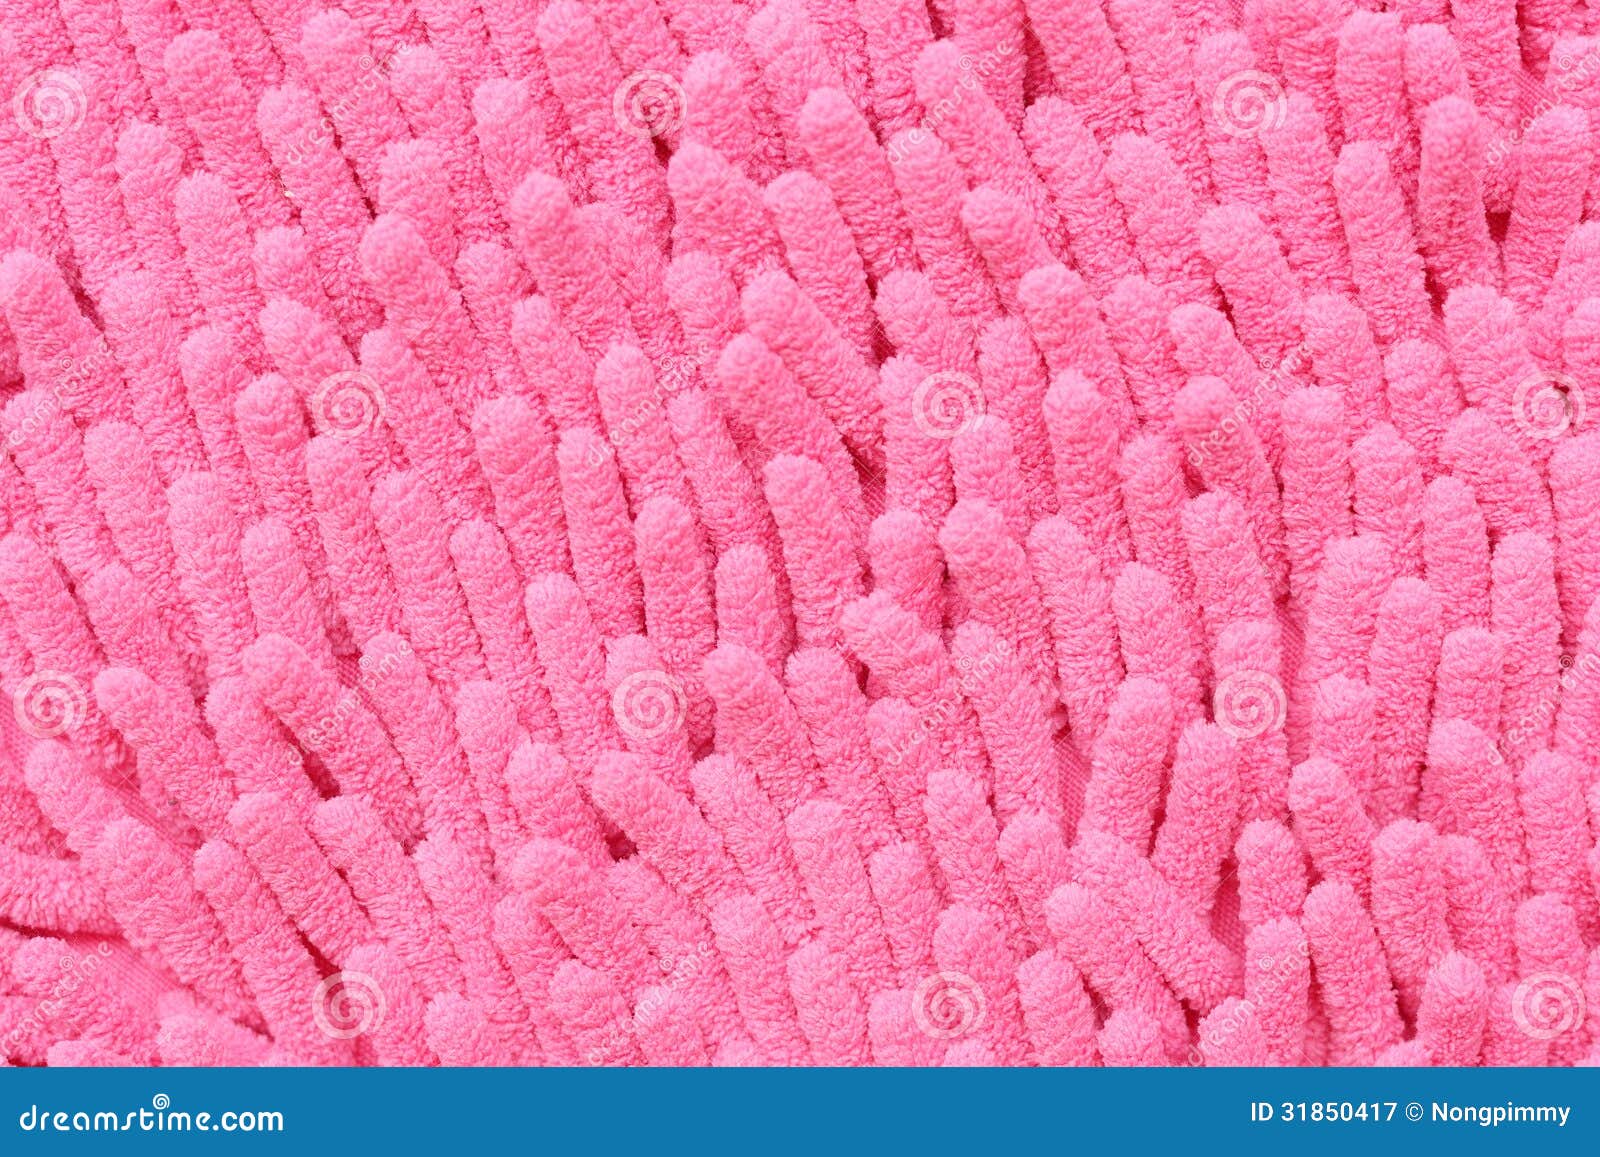 Abstract Roze Koraal Zoals Stock Afbeelding - Image of vezel, materiaal: 31850417